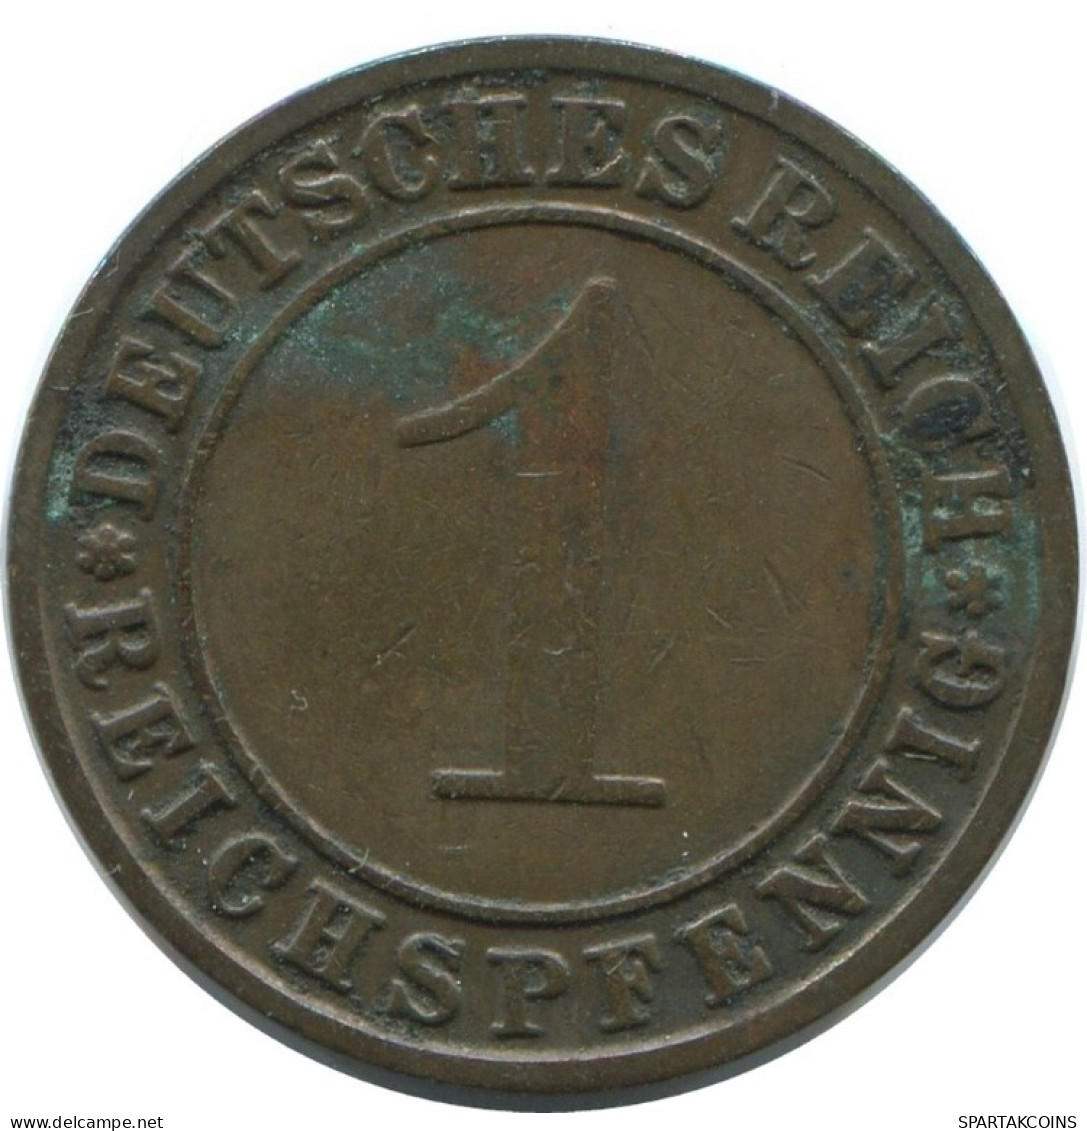 1 REICHSPFENNIG 1931 F GERMANY Coin #AE235.U.A - 1 Reichspfennig